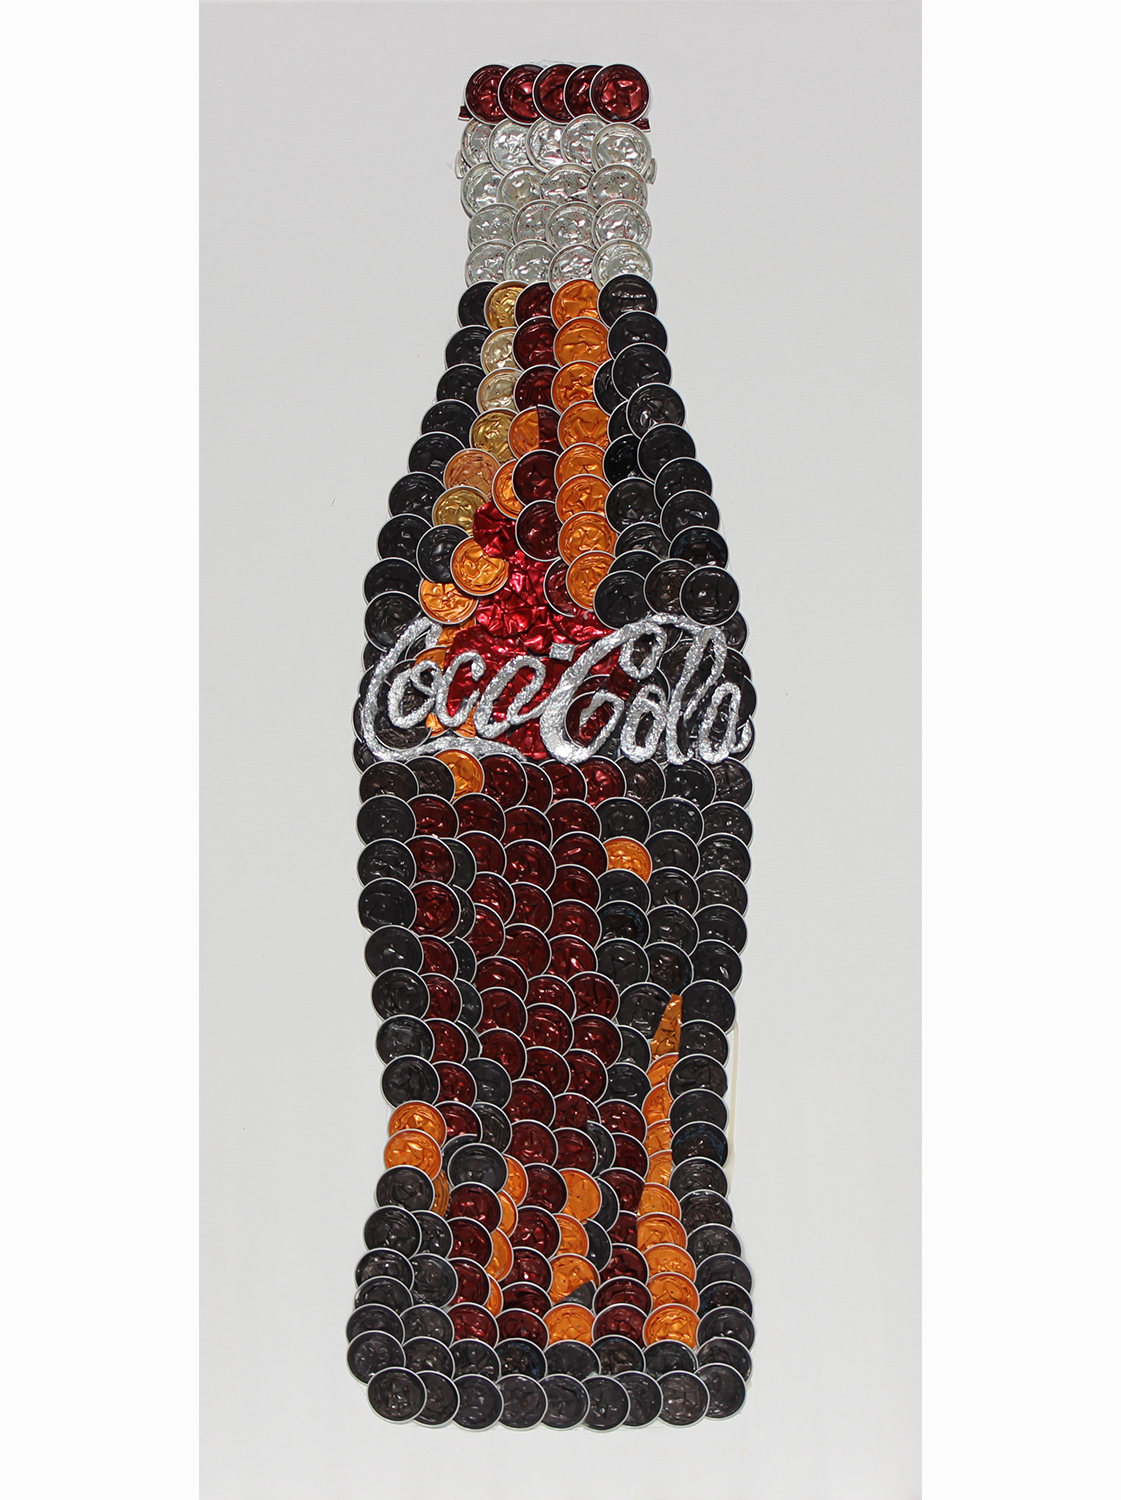 Coca cola th